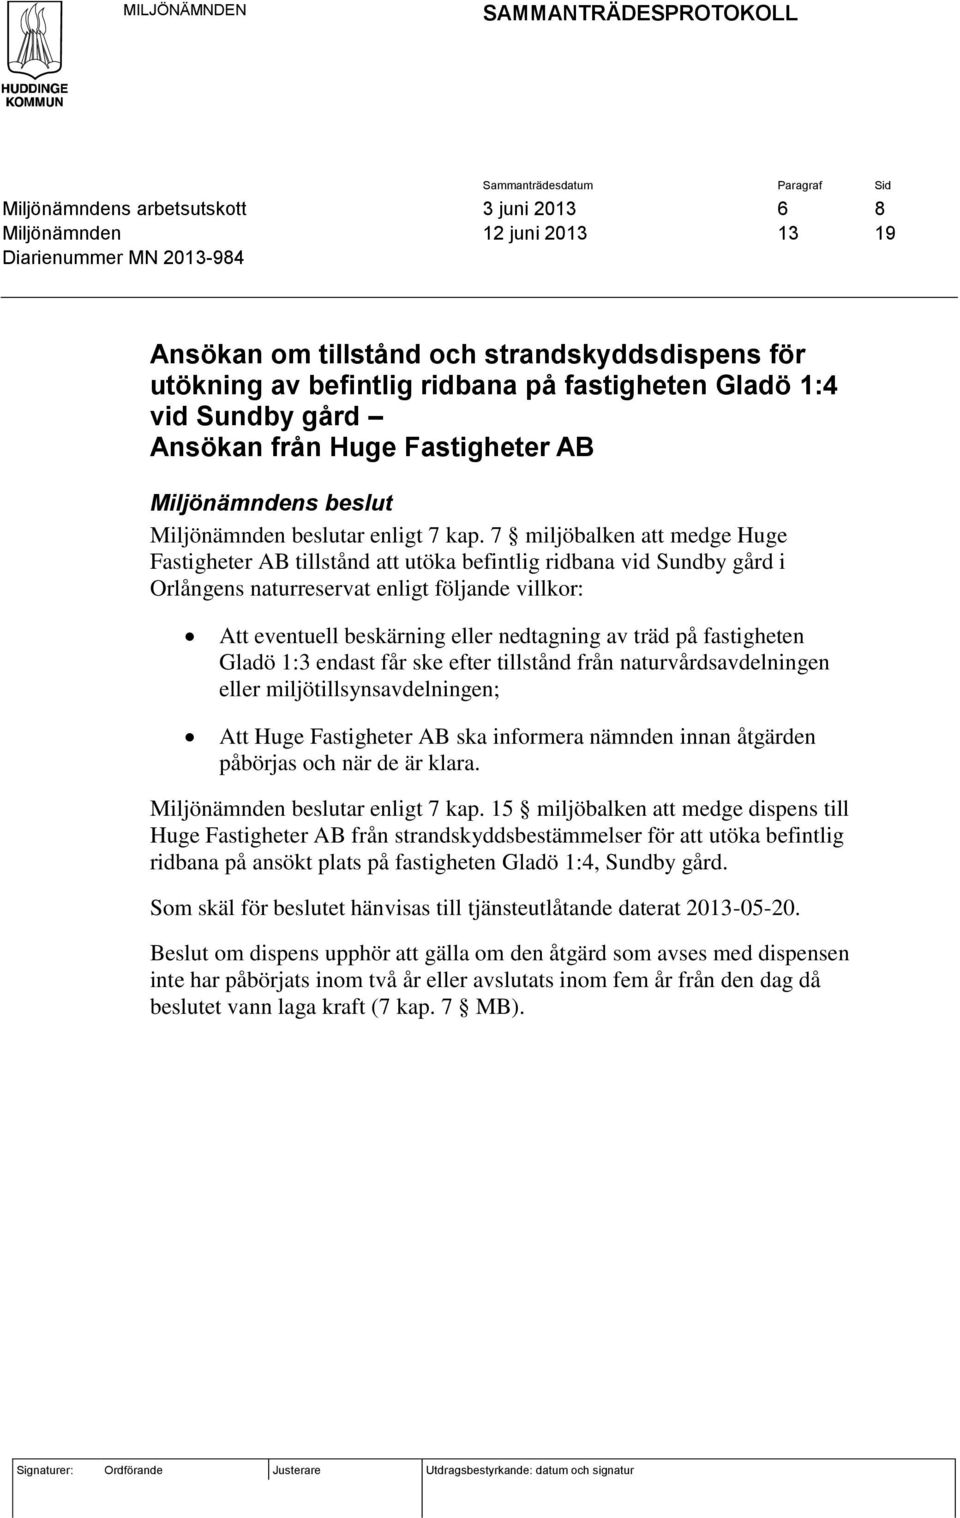 7 miljöbalken att medge Huge Fastigheter AB tillstånd att utöka befintlig ridbana vid Sundby gård i Orlångens naturreservat enligt följande villkor: Att eventuell beskärning eller nedtagning av träd